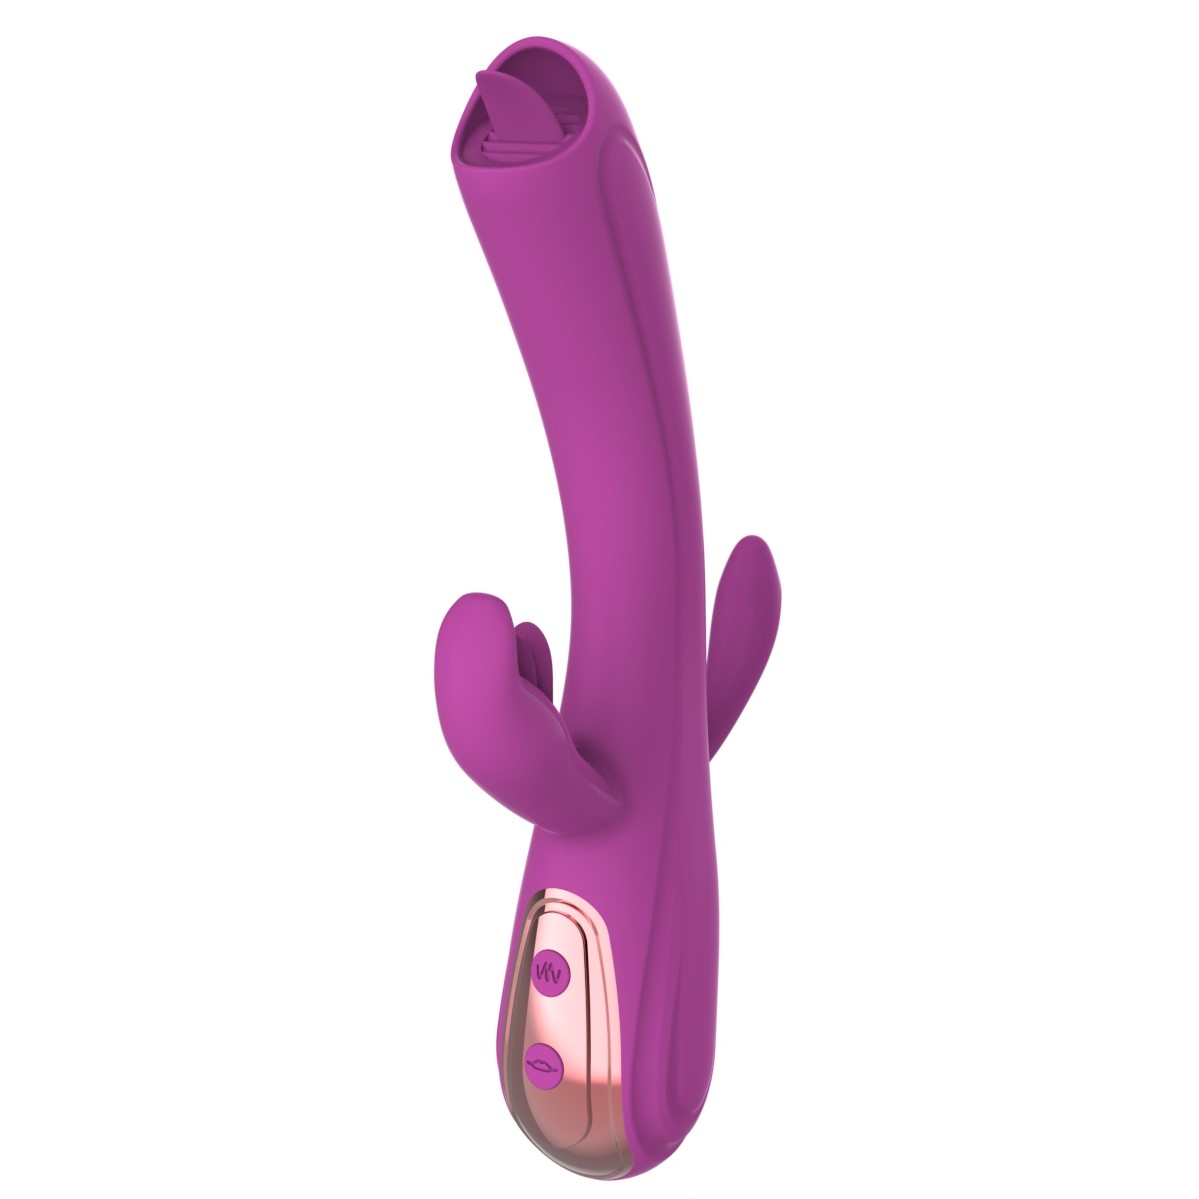 Vibrator Iepuras Leila, Vibrating&Licking, Silicon, USB, Mov, 22 cm, Mokko Toys, Good Vibes